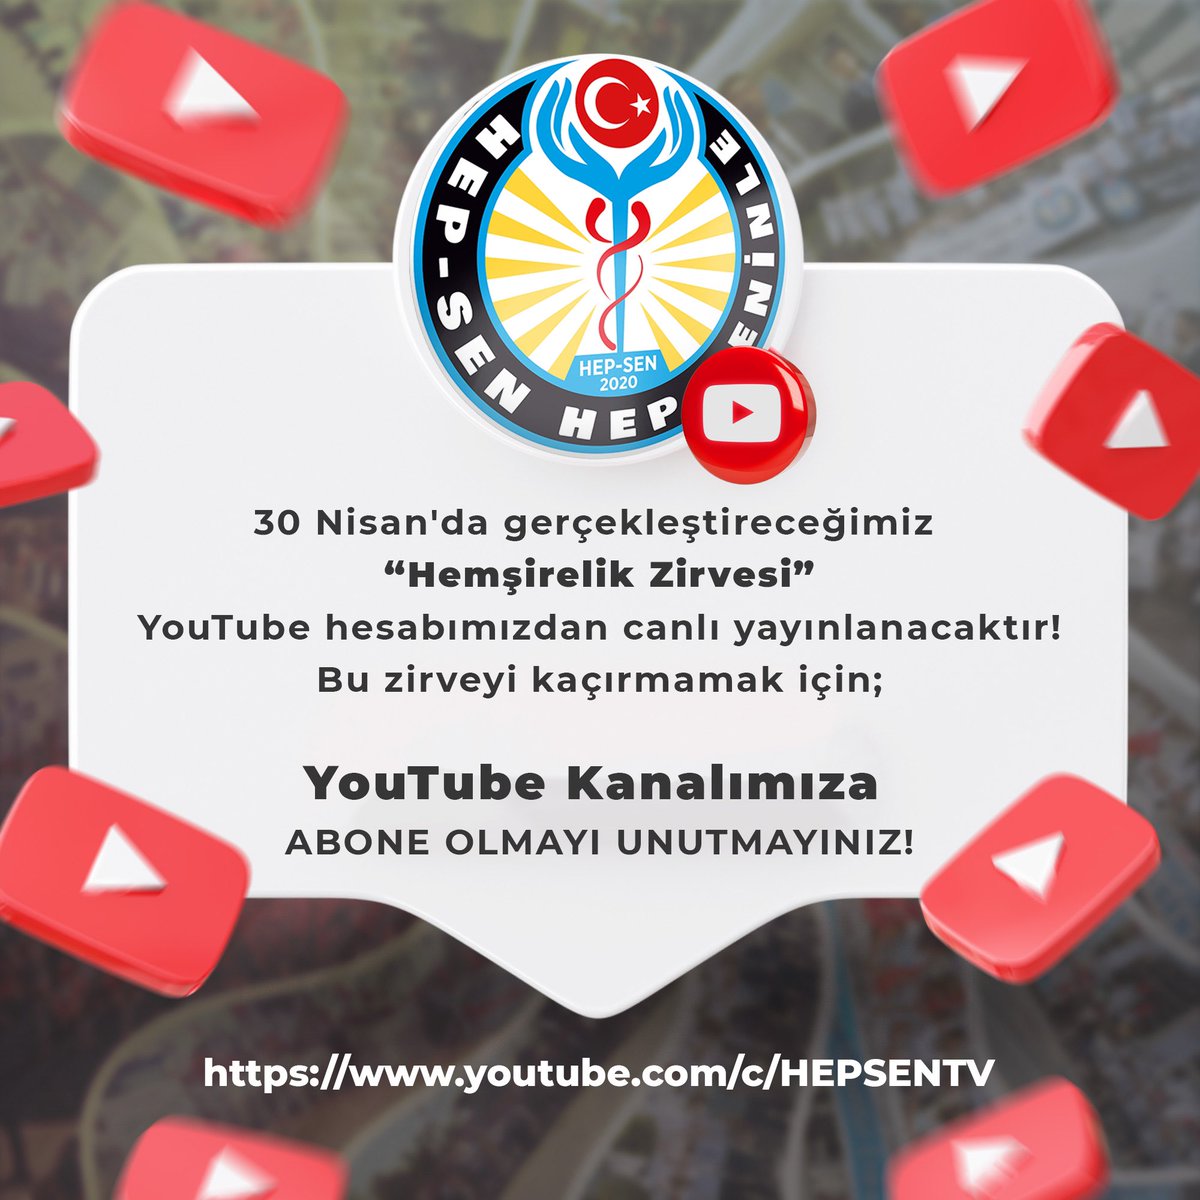 30 Nisan'da gerçekleştireceğimiz “Hemşirelik Zirvesi” YouTube hesabımızdan canlı yayınlanacaktır. Bu zirveyi kaçırmamak için YouTube kanalımıza abone olmayı unutmayınız. HEP-SEN Türkiye'nin En Genç ve Dinamik Yeni Nesil Sağlık Sendikası @hepsen_2020 🌐…